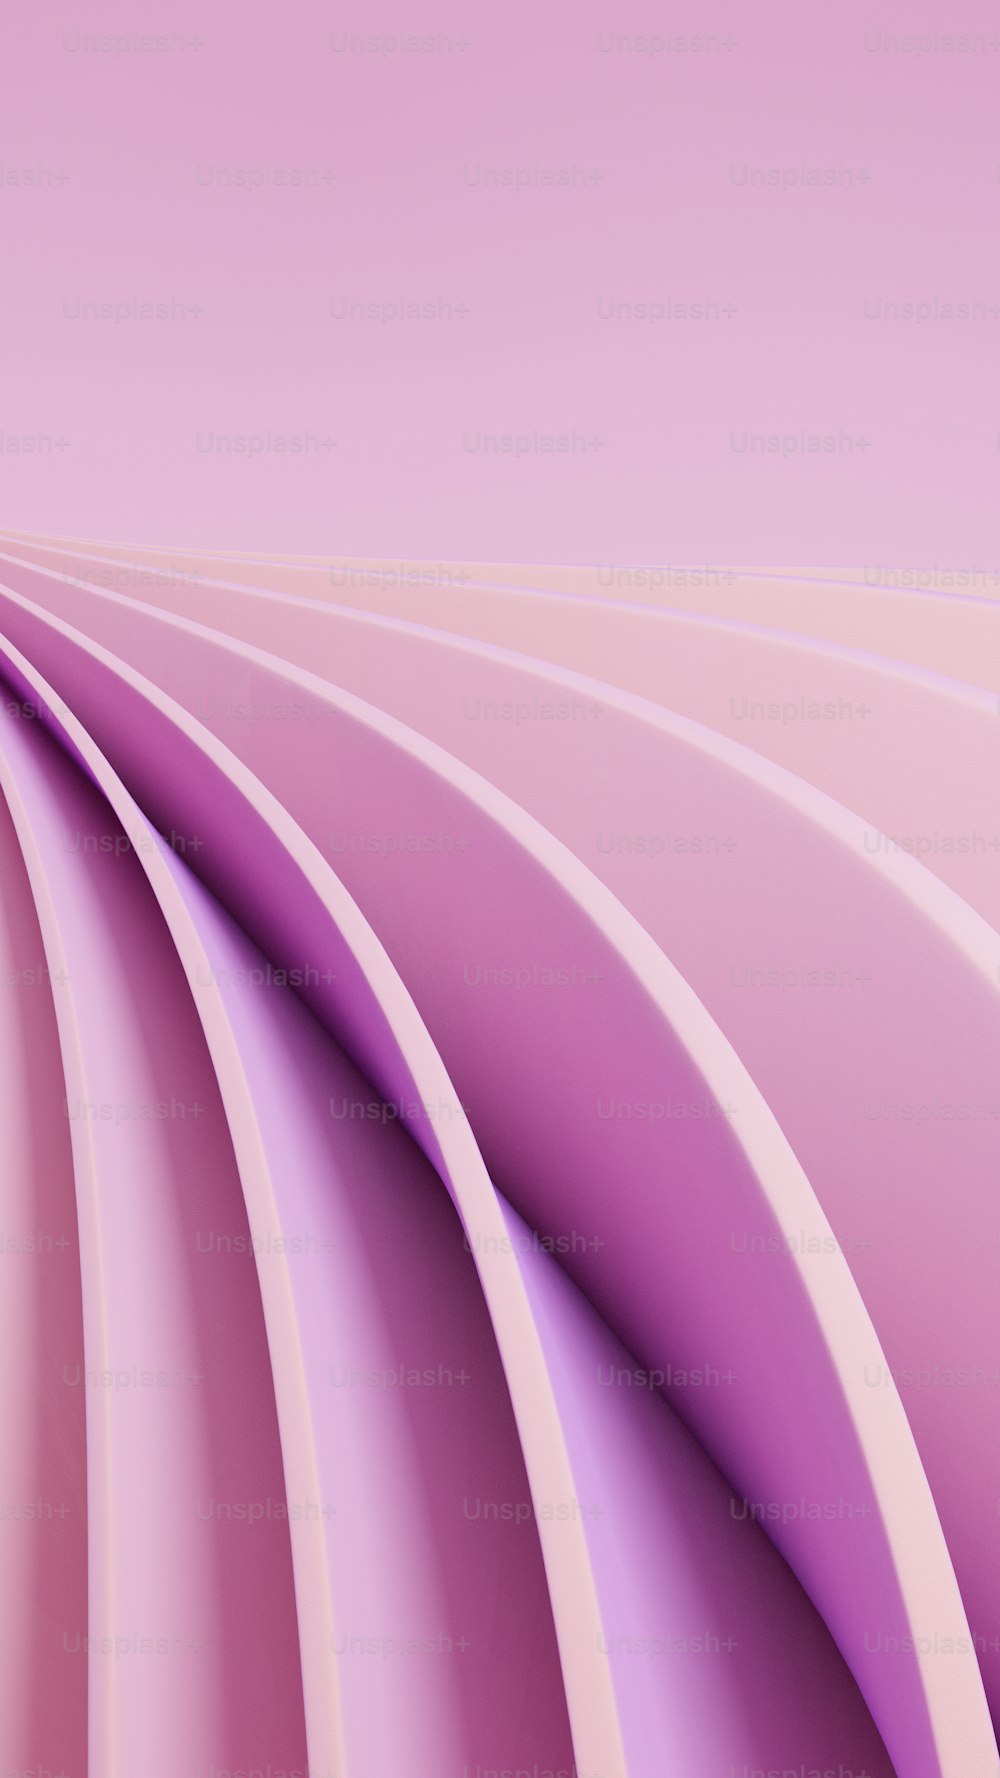 Un fondo abstracto rosa con líneas curvas